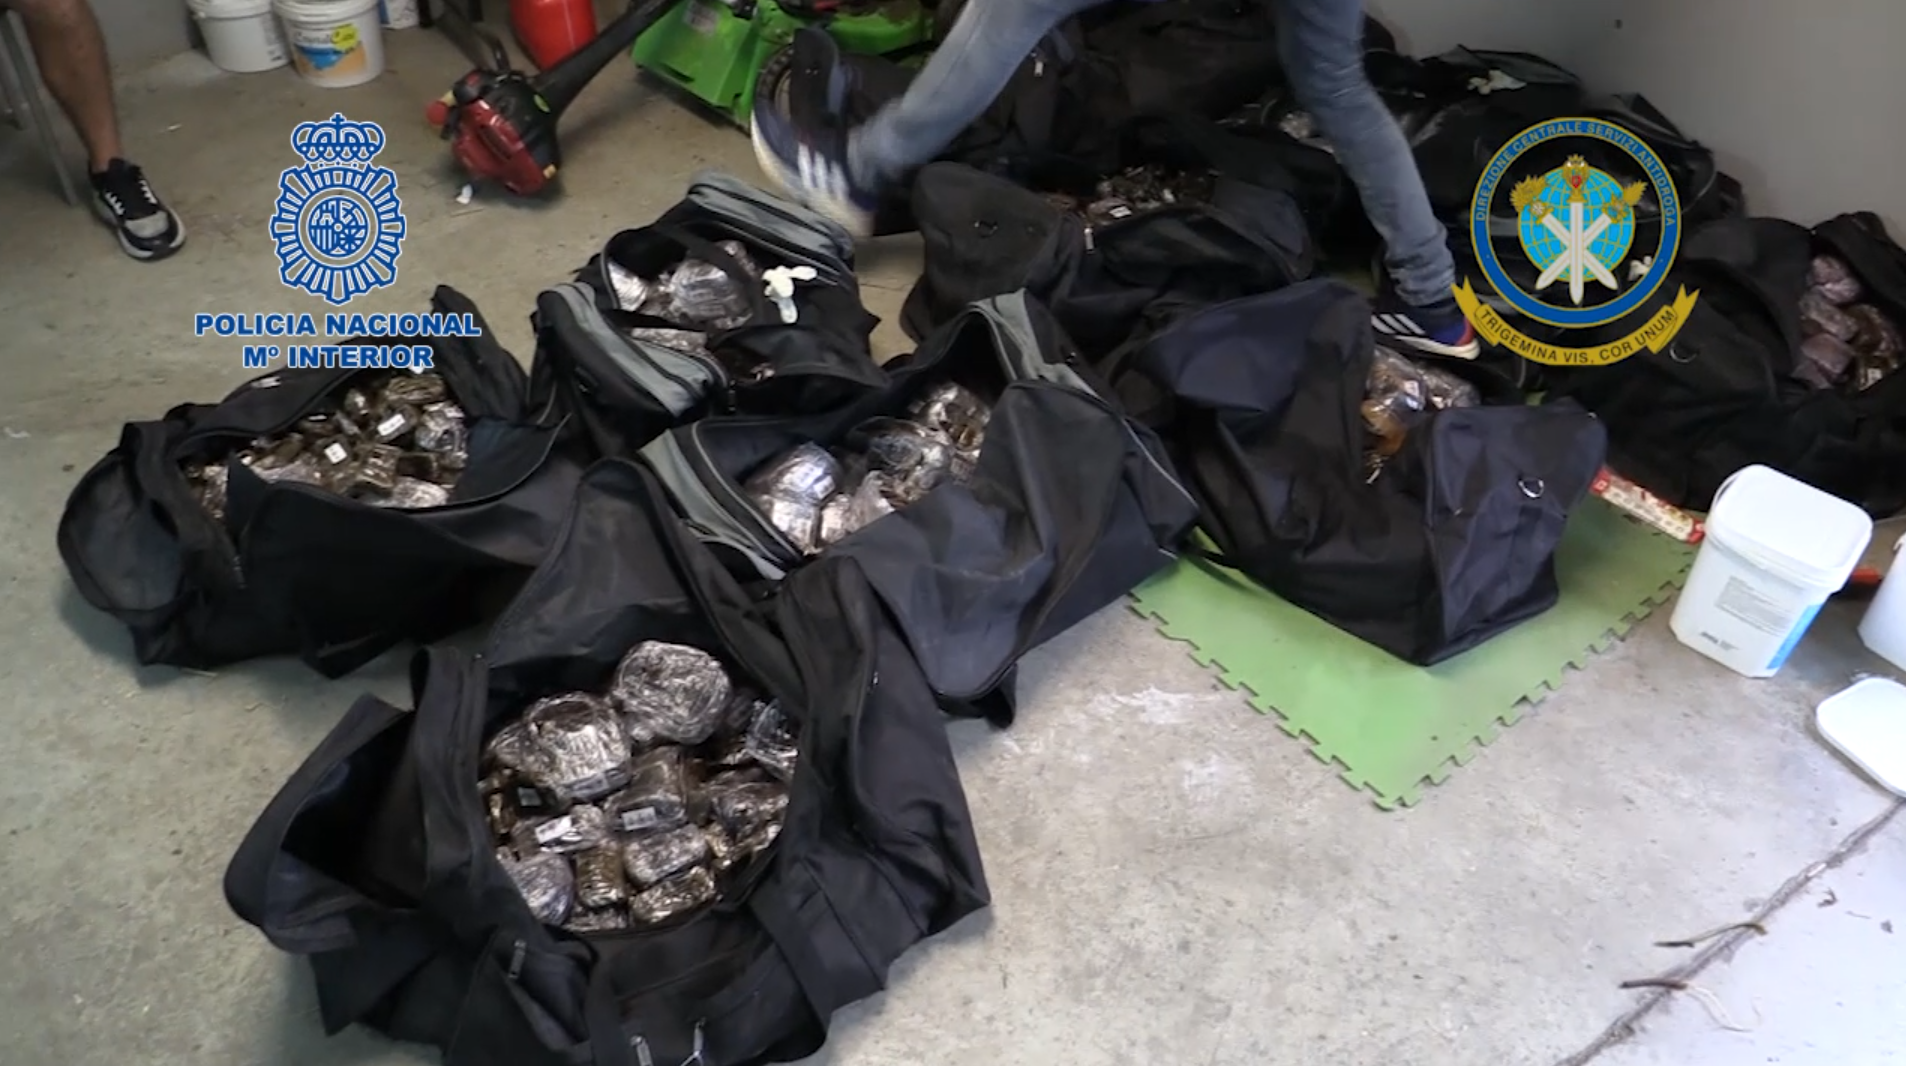 Decomisados 1.500 kg de hachís y 75 kg de marihuana en una vivienda de Sant Vicenç dels Horts